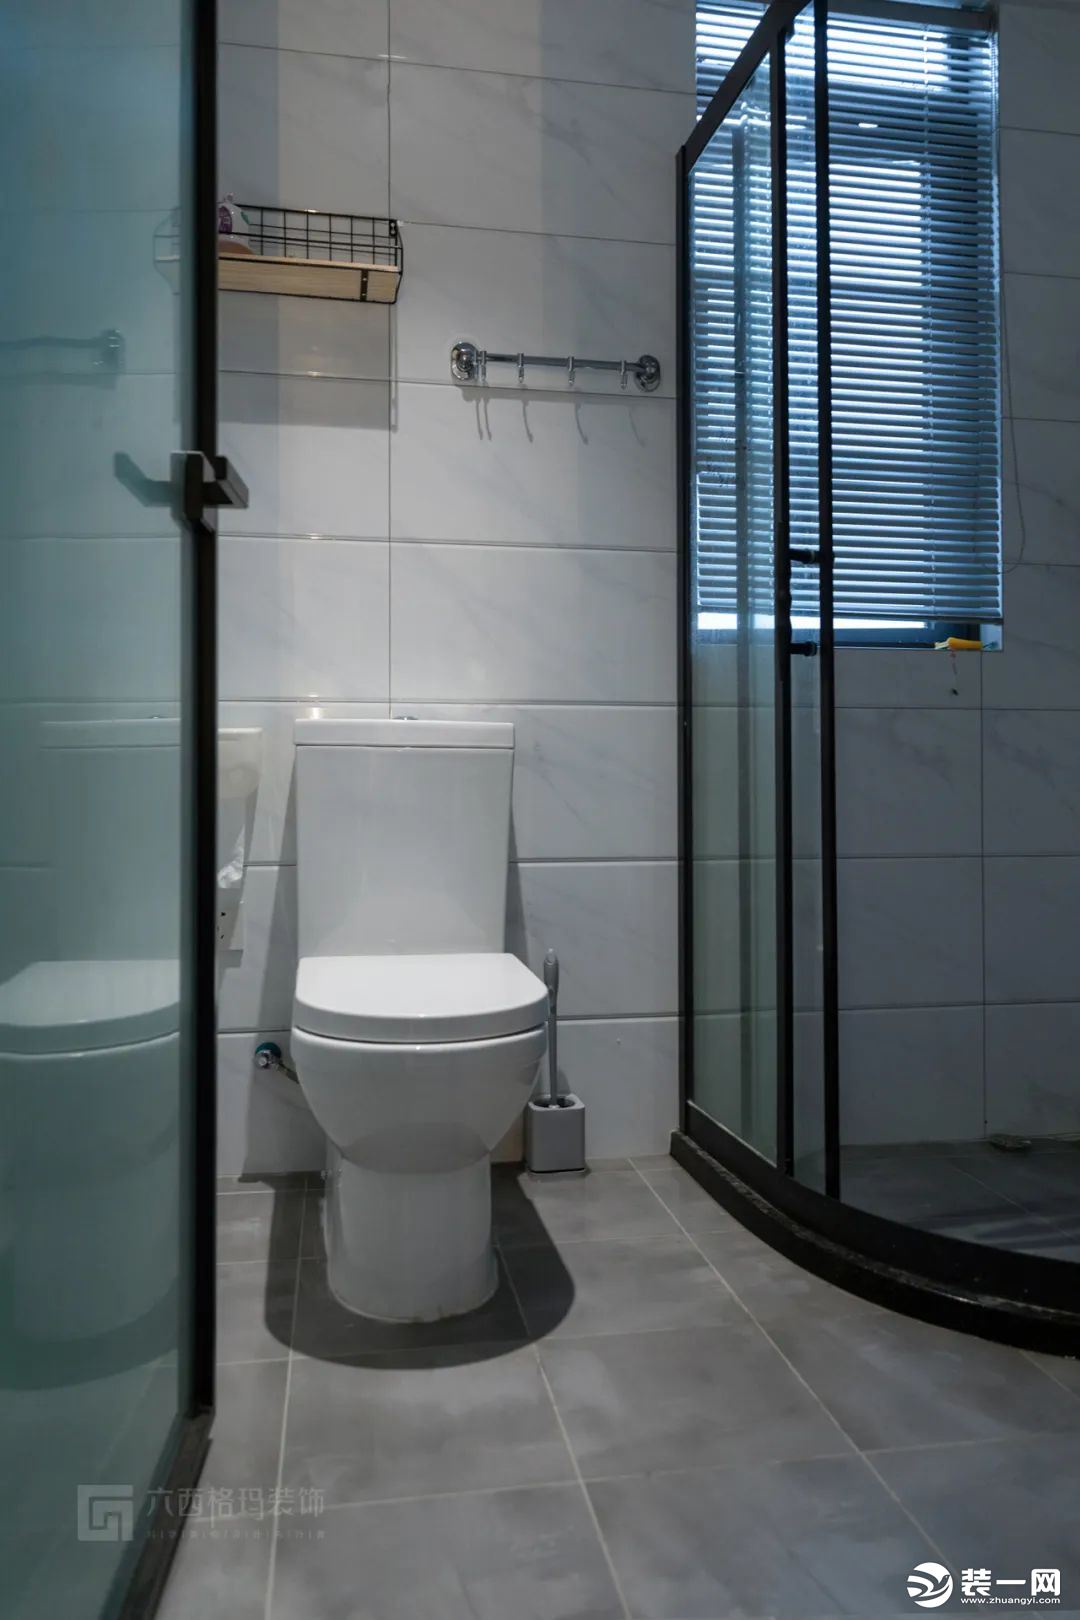 干湿分离后更利于卫生的清理，洗漱与如厕也能同时进行了。